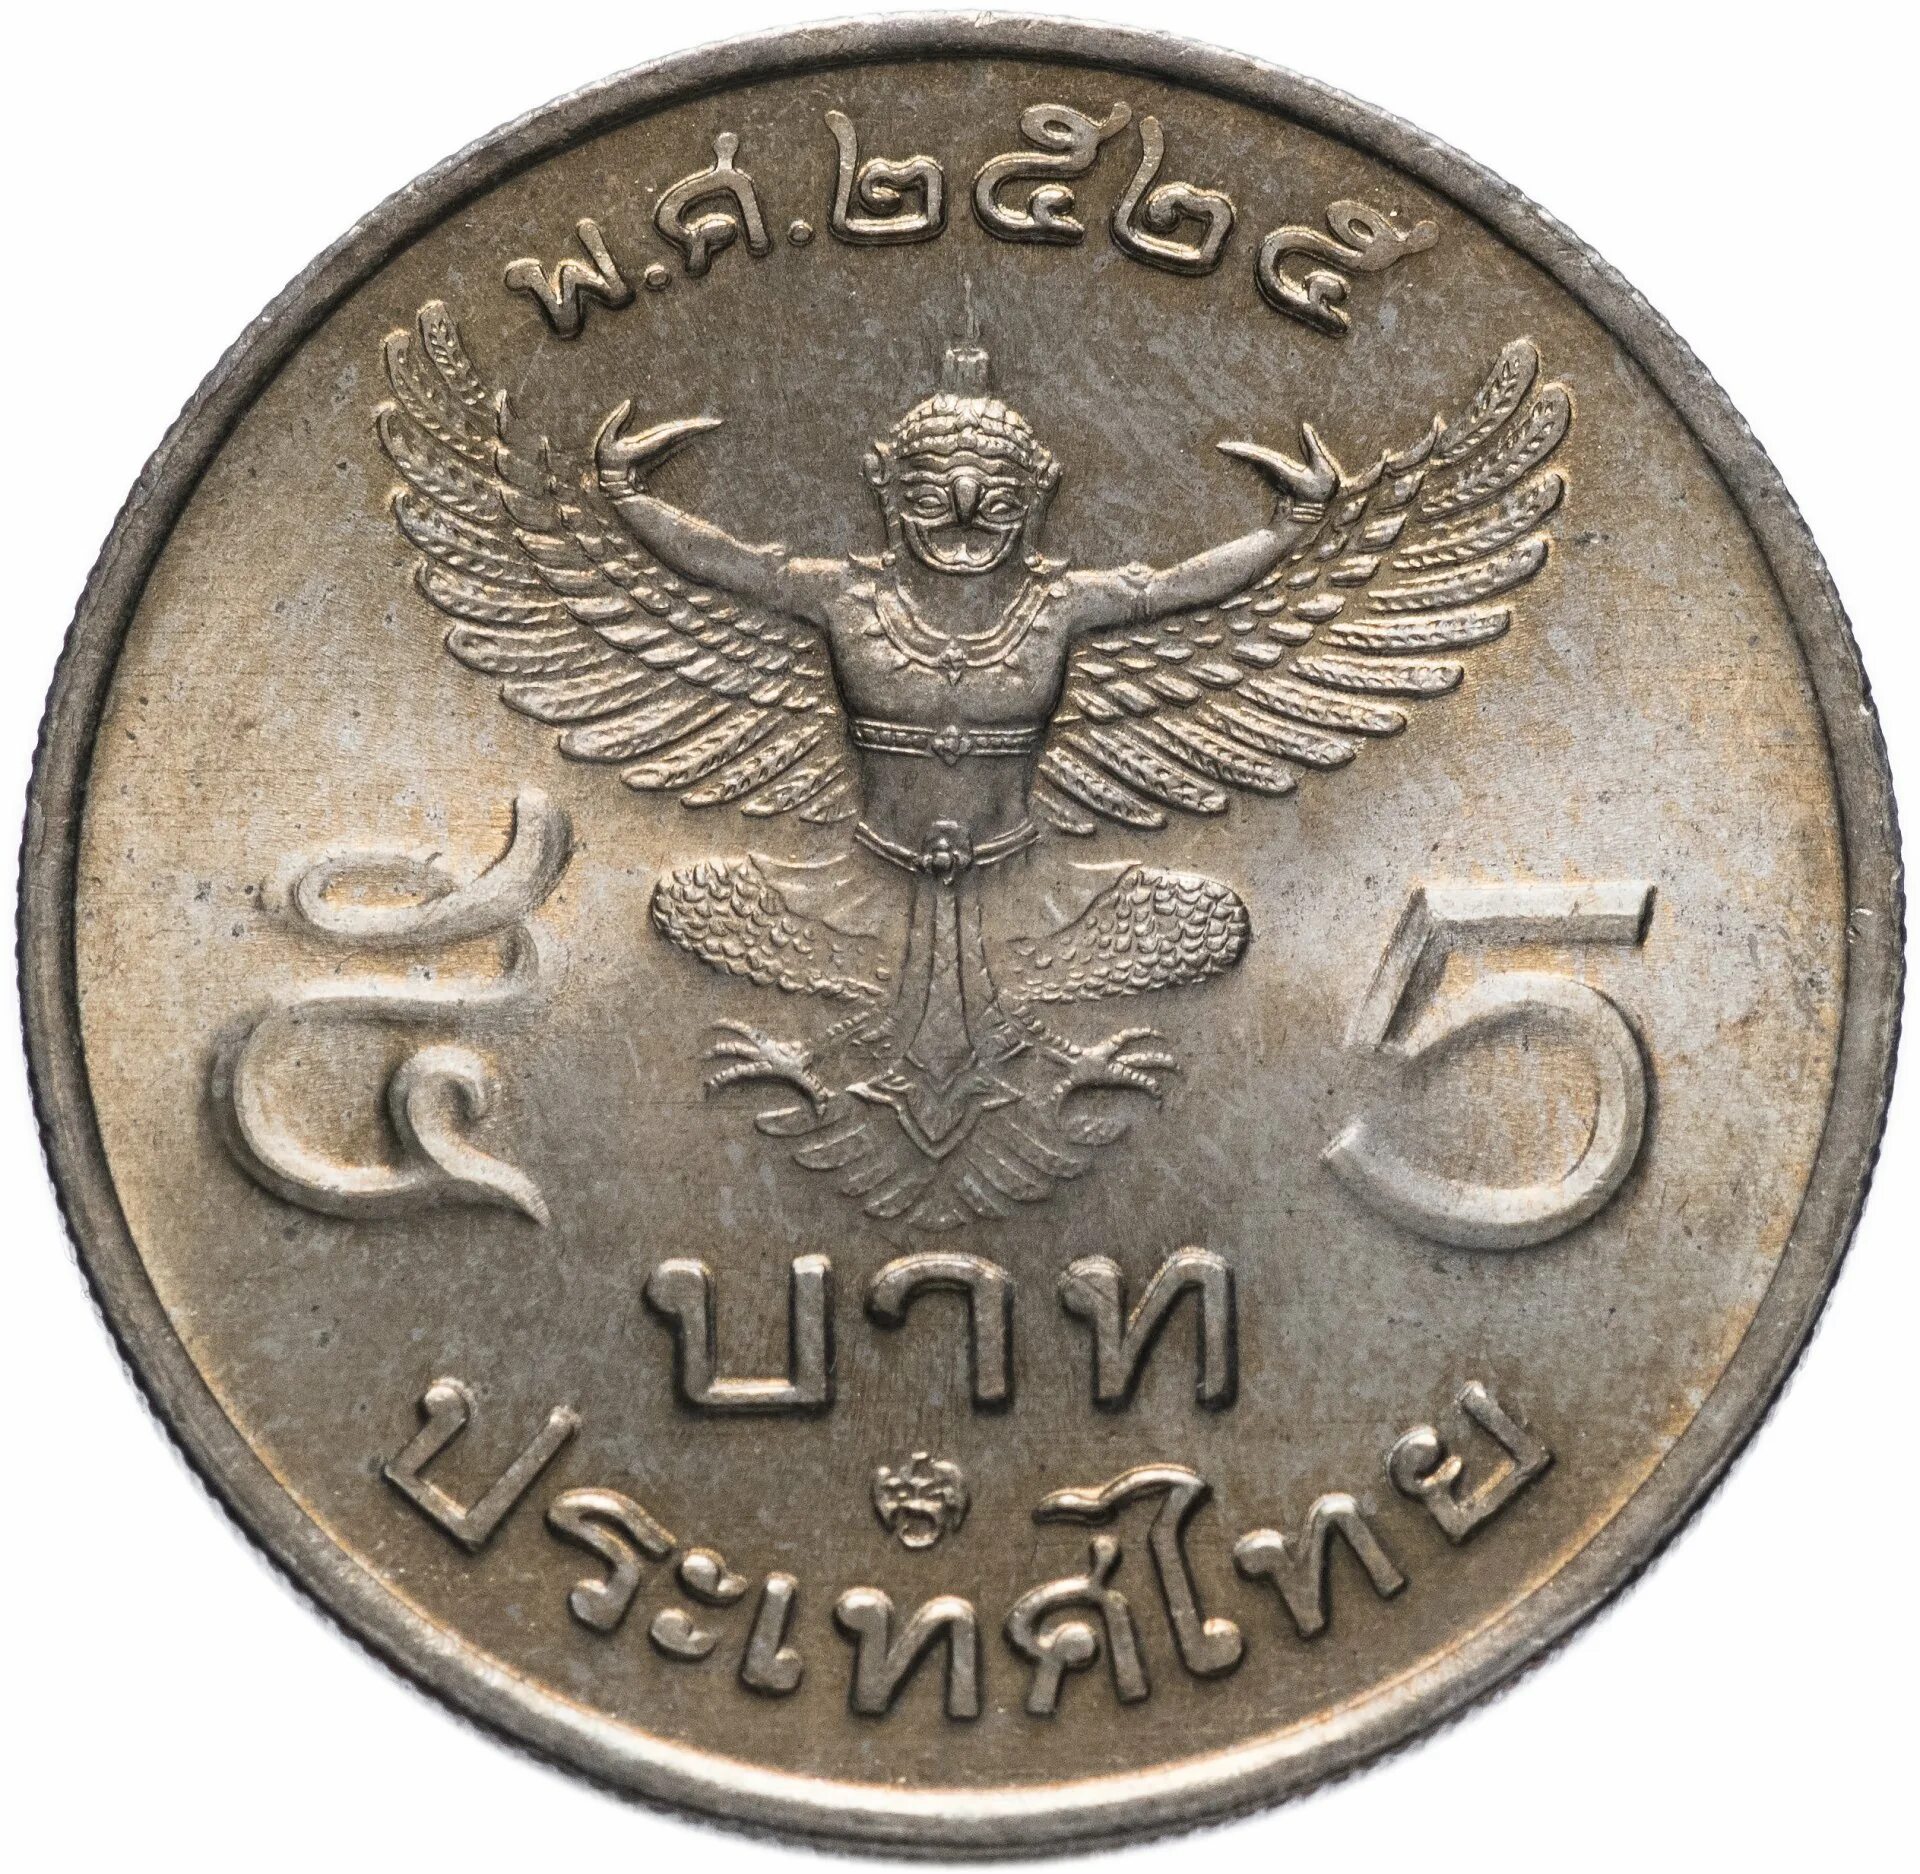 Тайланская монета 5 бат. Монеты Тайланда 5 бат. Монеты Таиланд 1 бат 1982. Тайские монеты 5 бат.